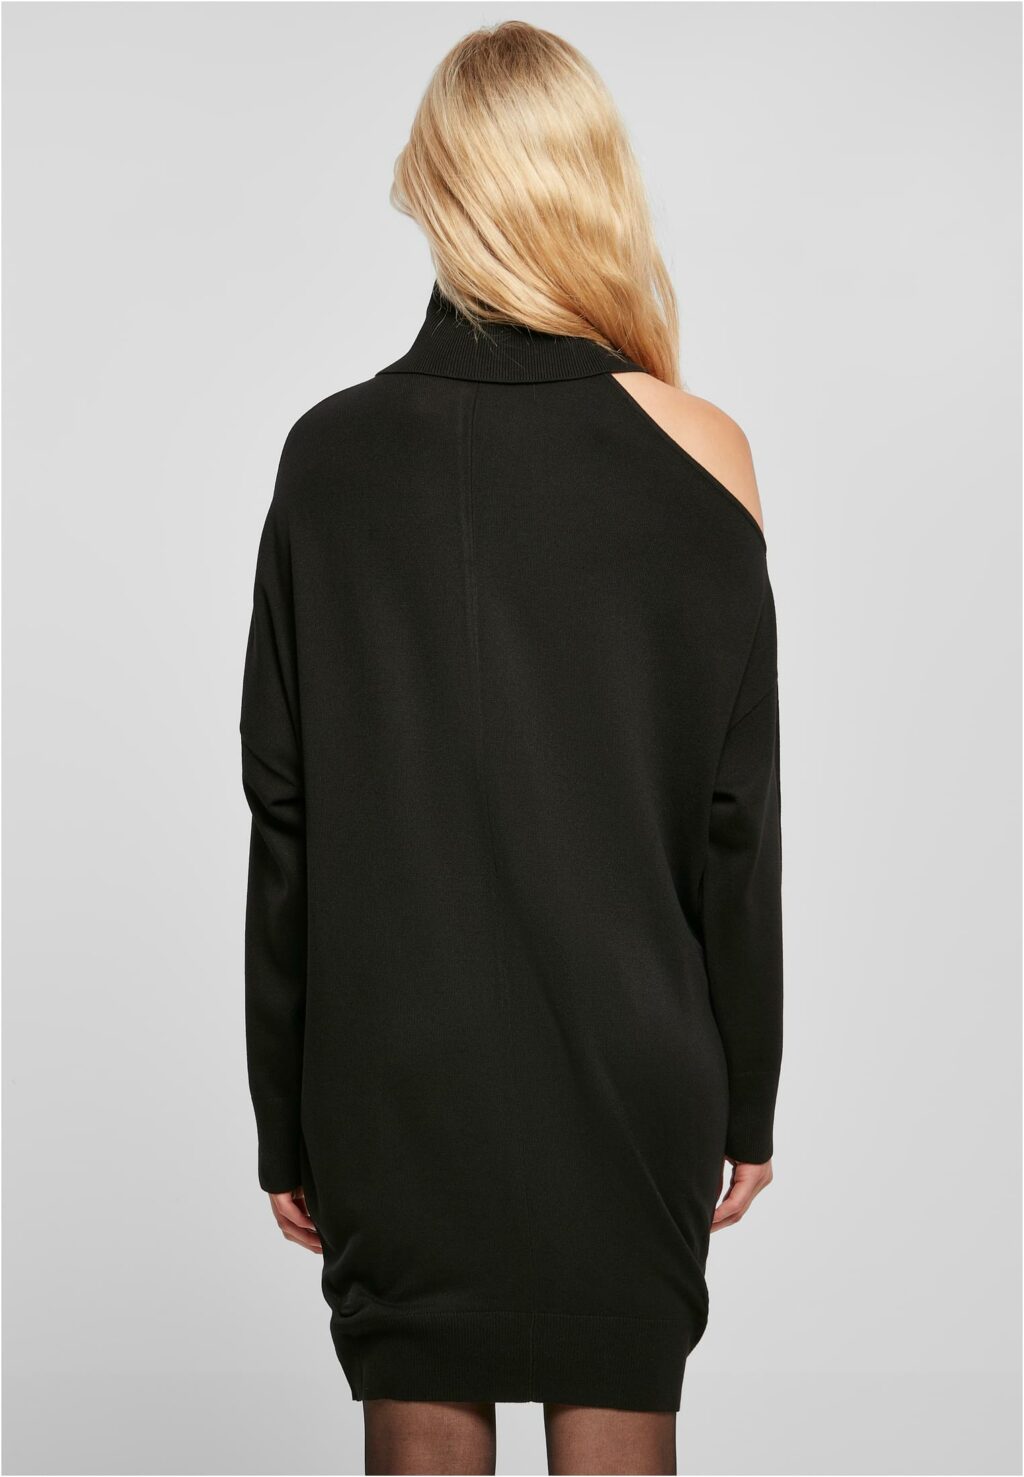 Urban Classics Ladies One Shoulder Knit Dress black TB5447